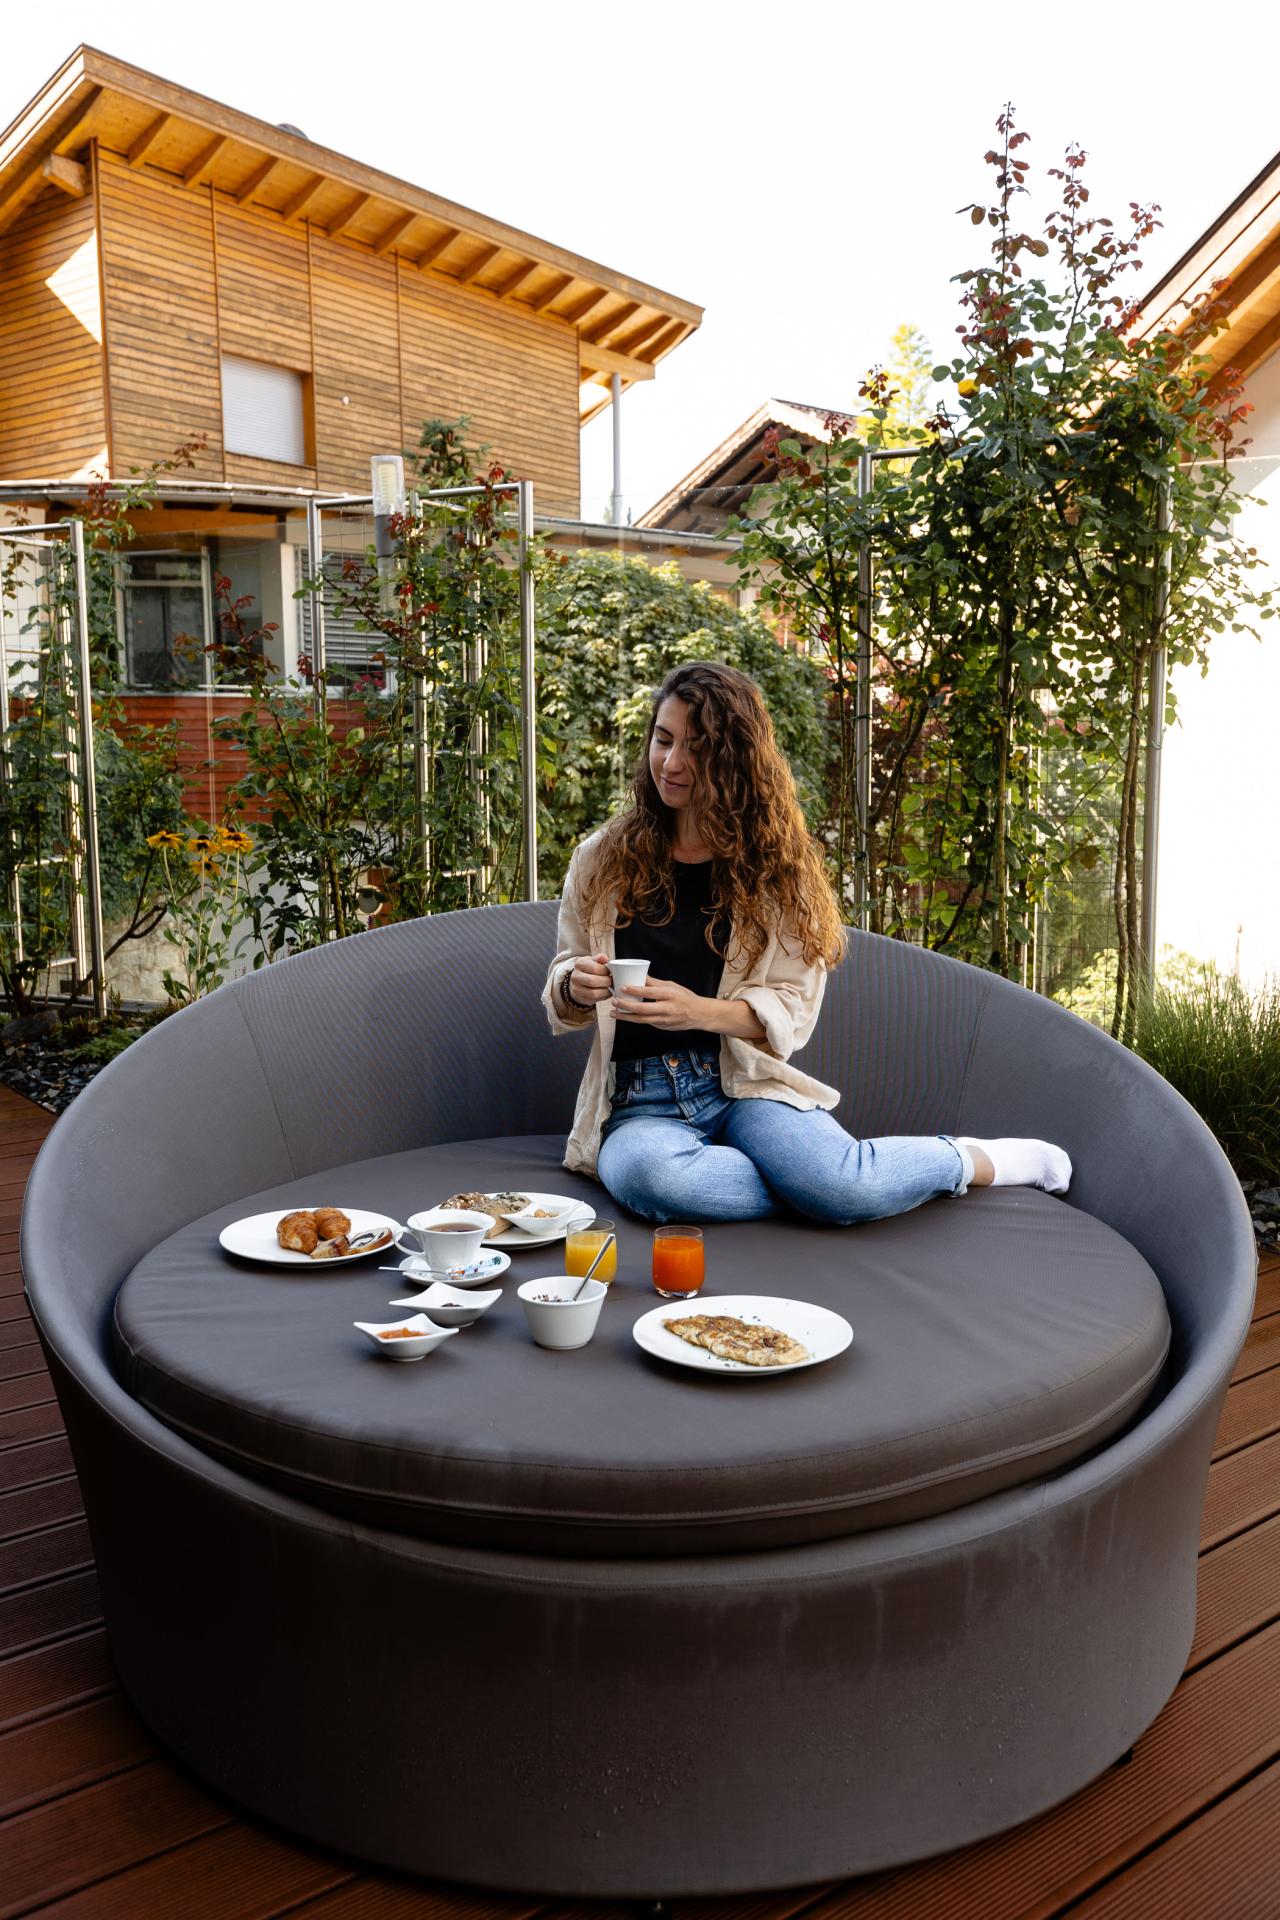 Frau, die in einem Garten auf einer runden Couch sitzt und frühstückt